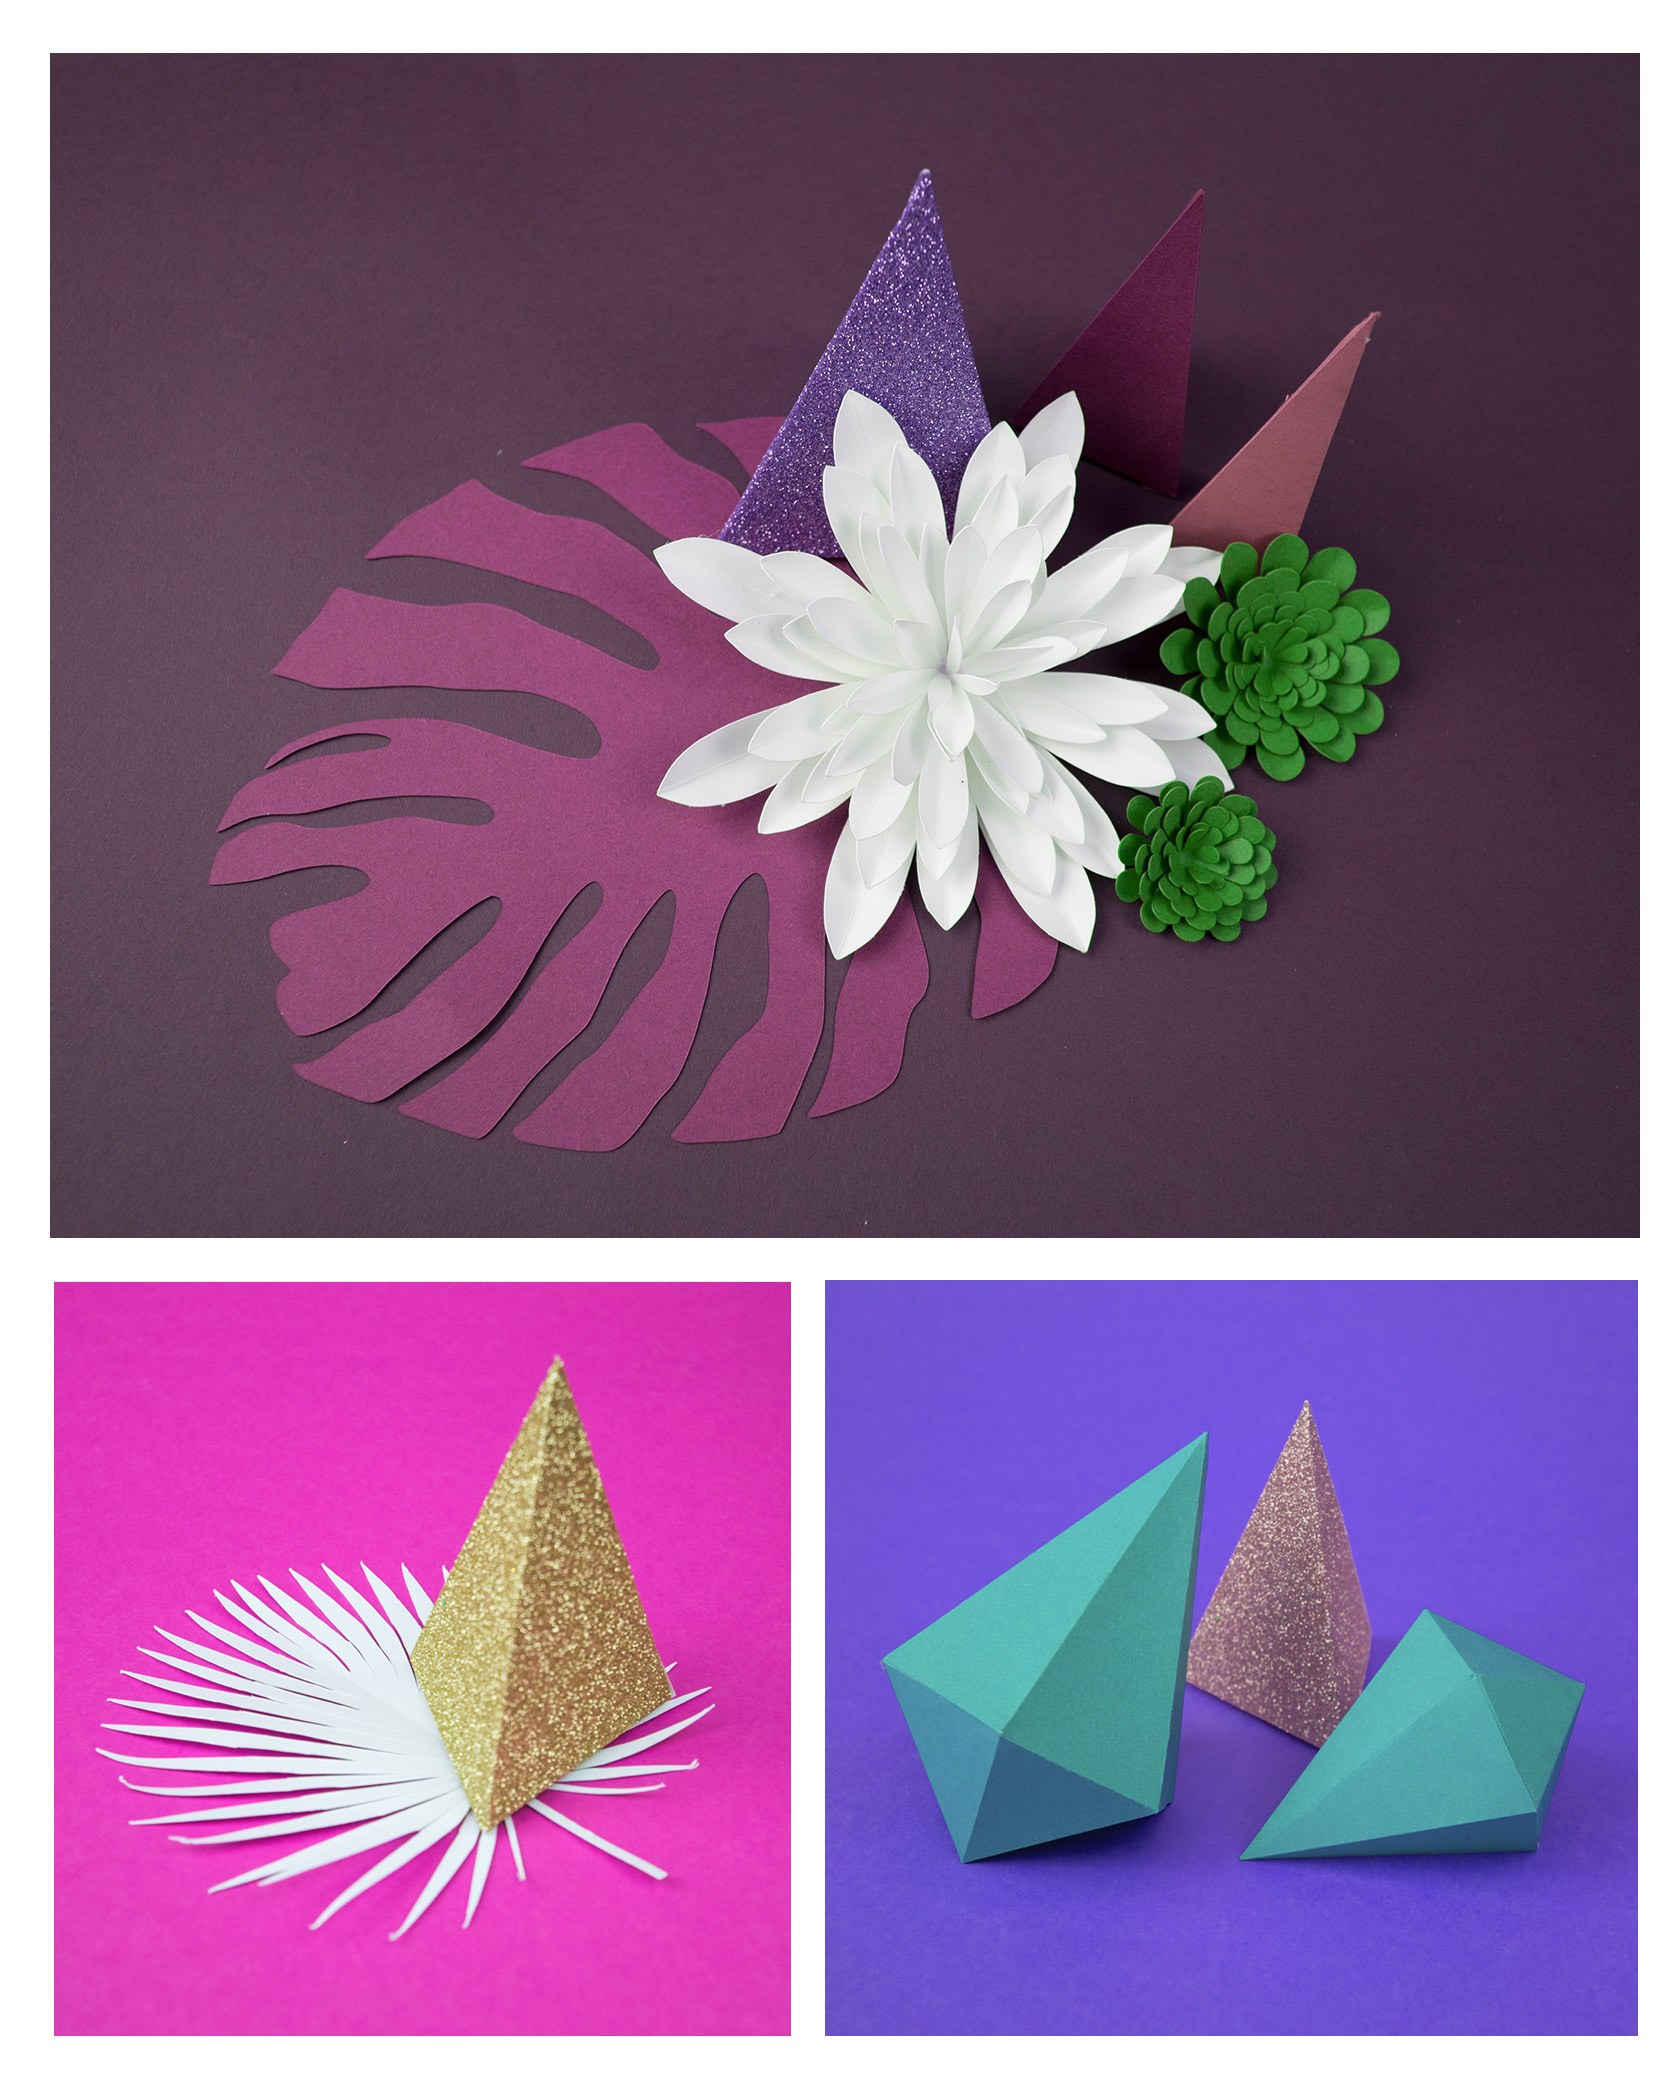 Paper sculpture botanical gems